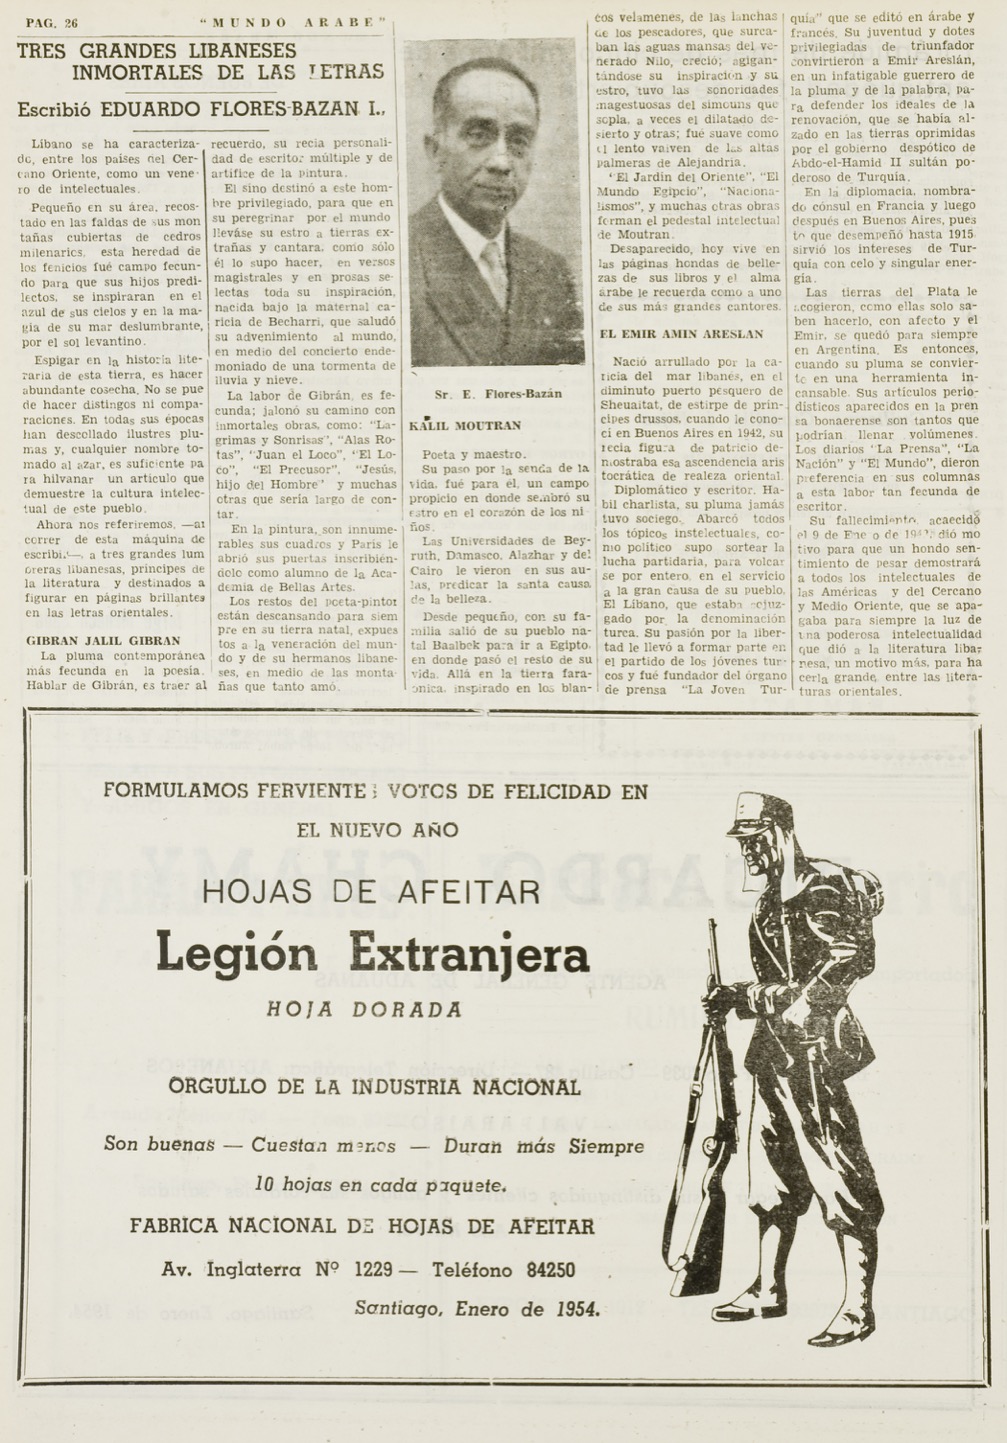 Eduardo Flores-Bazan, "Tres grandes Libaneses inmortales de las letras", Mundo Árabe, Jan 8, 1954, p. 26.